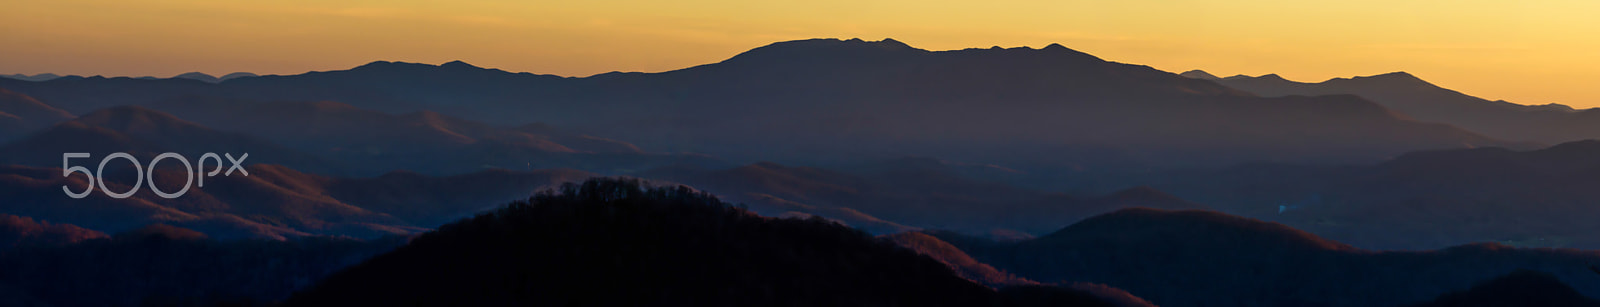 Nikon D7000 sample photo. Roan mountain sunset panorama photography